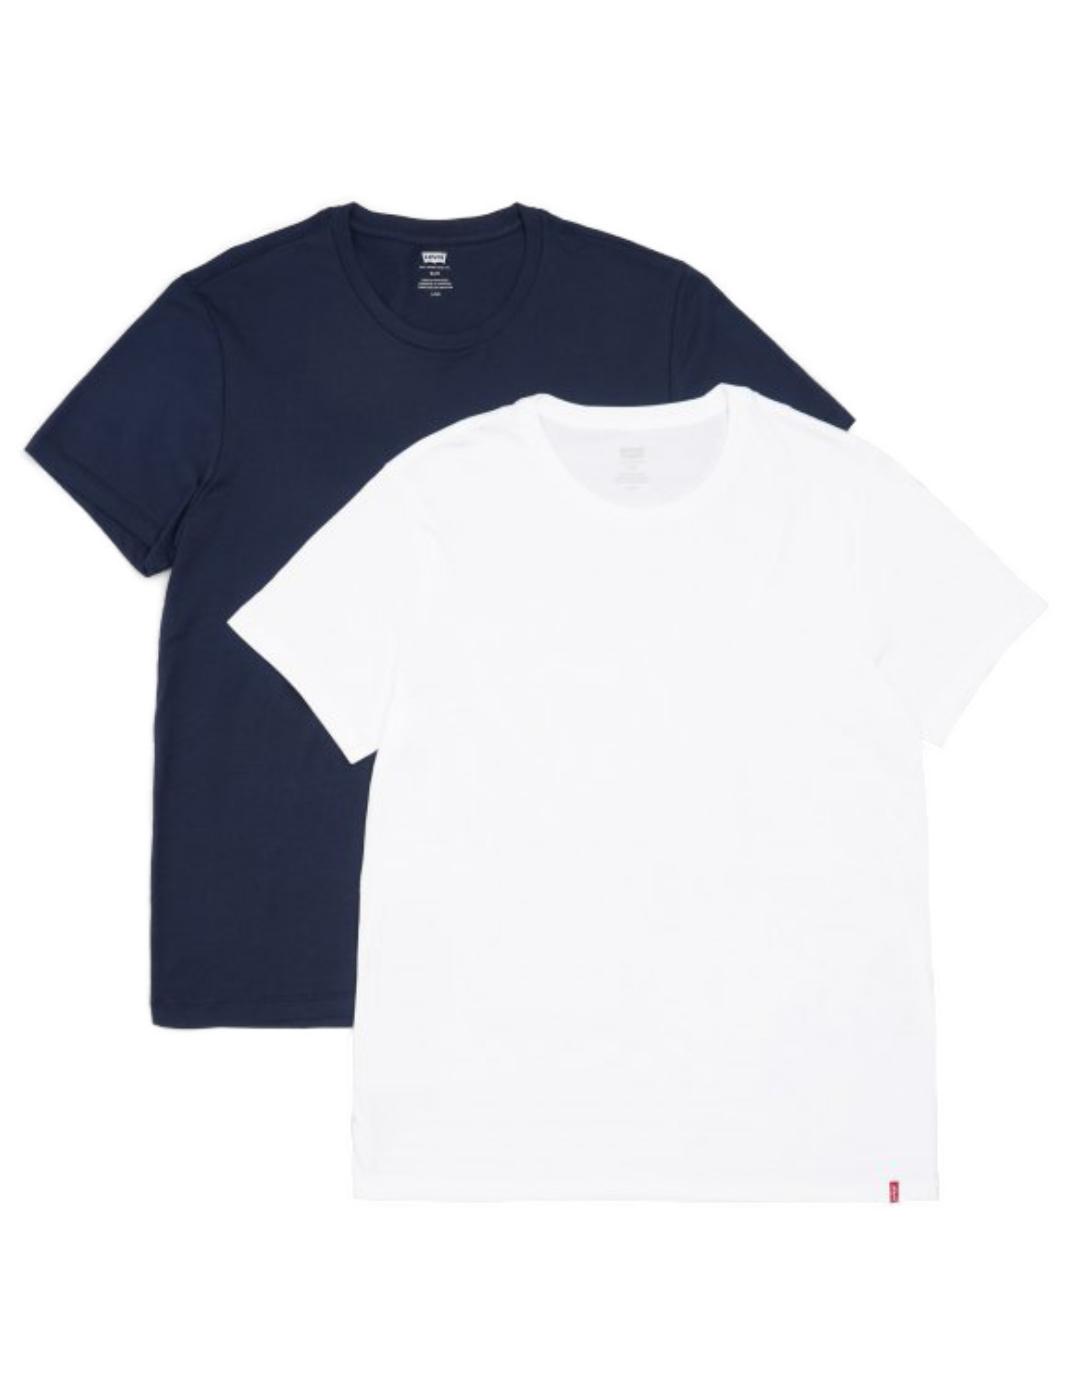 Pack de 2 camisetas levis marino y blanco hombre-v